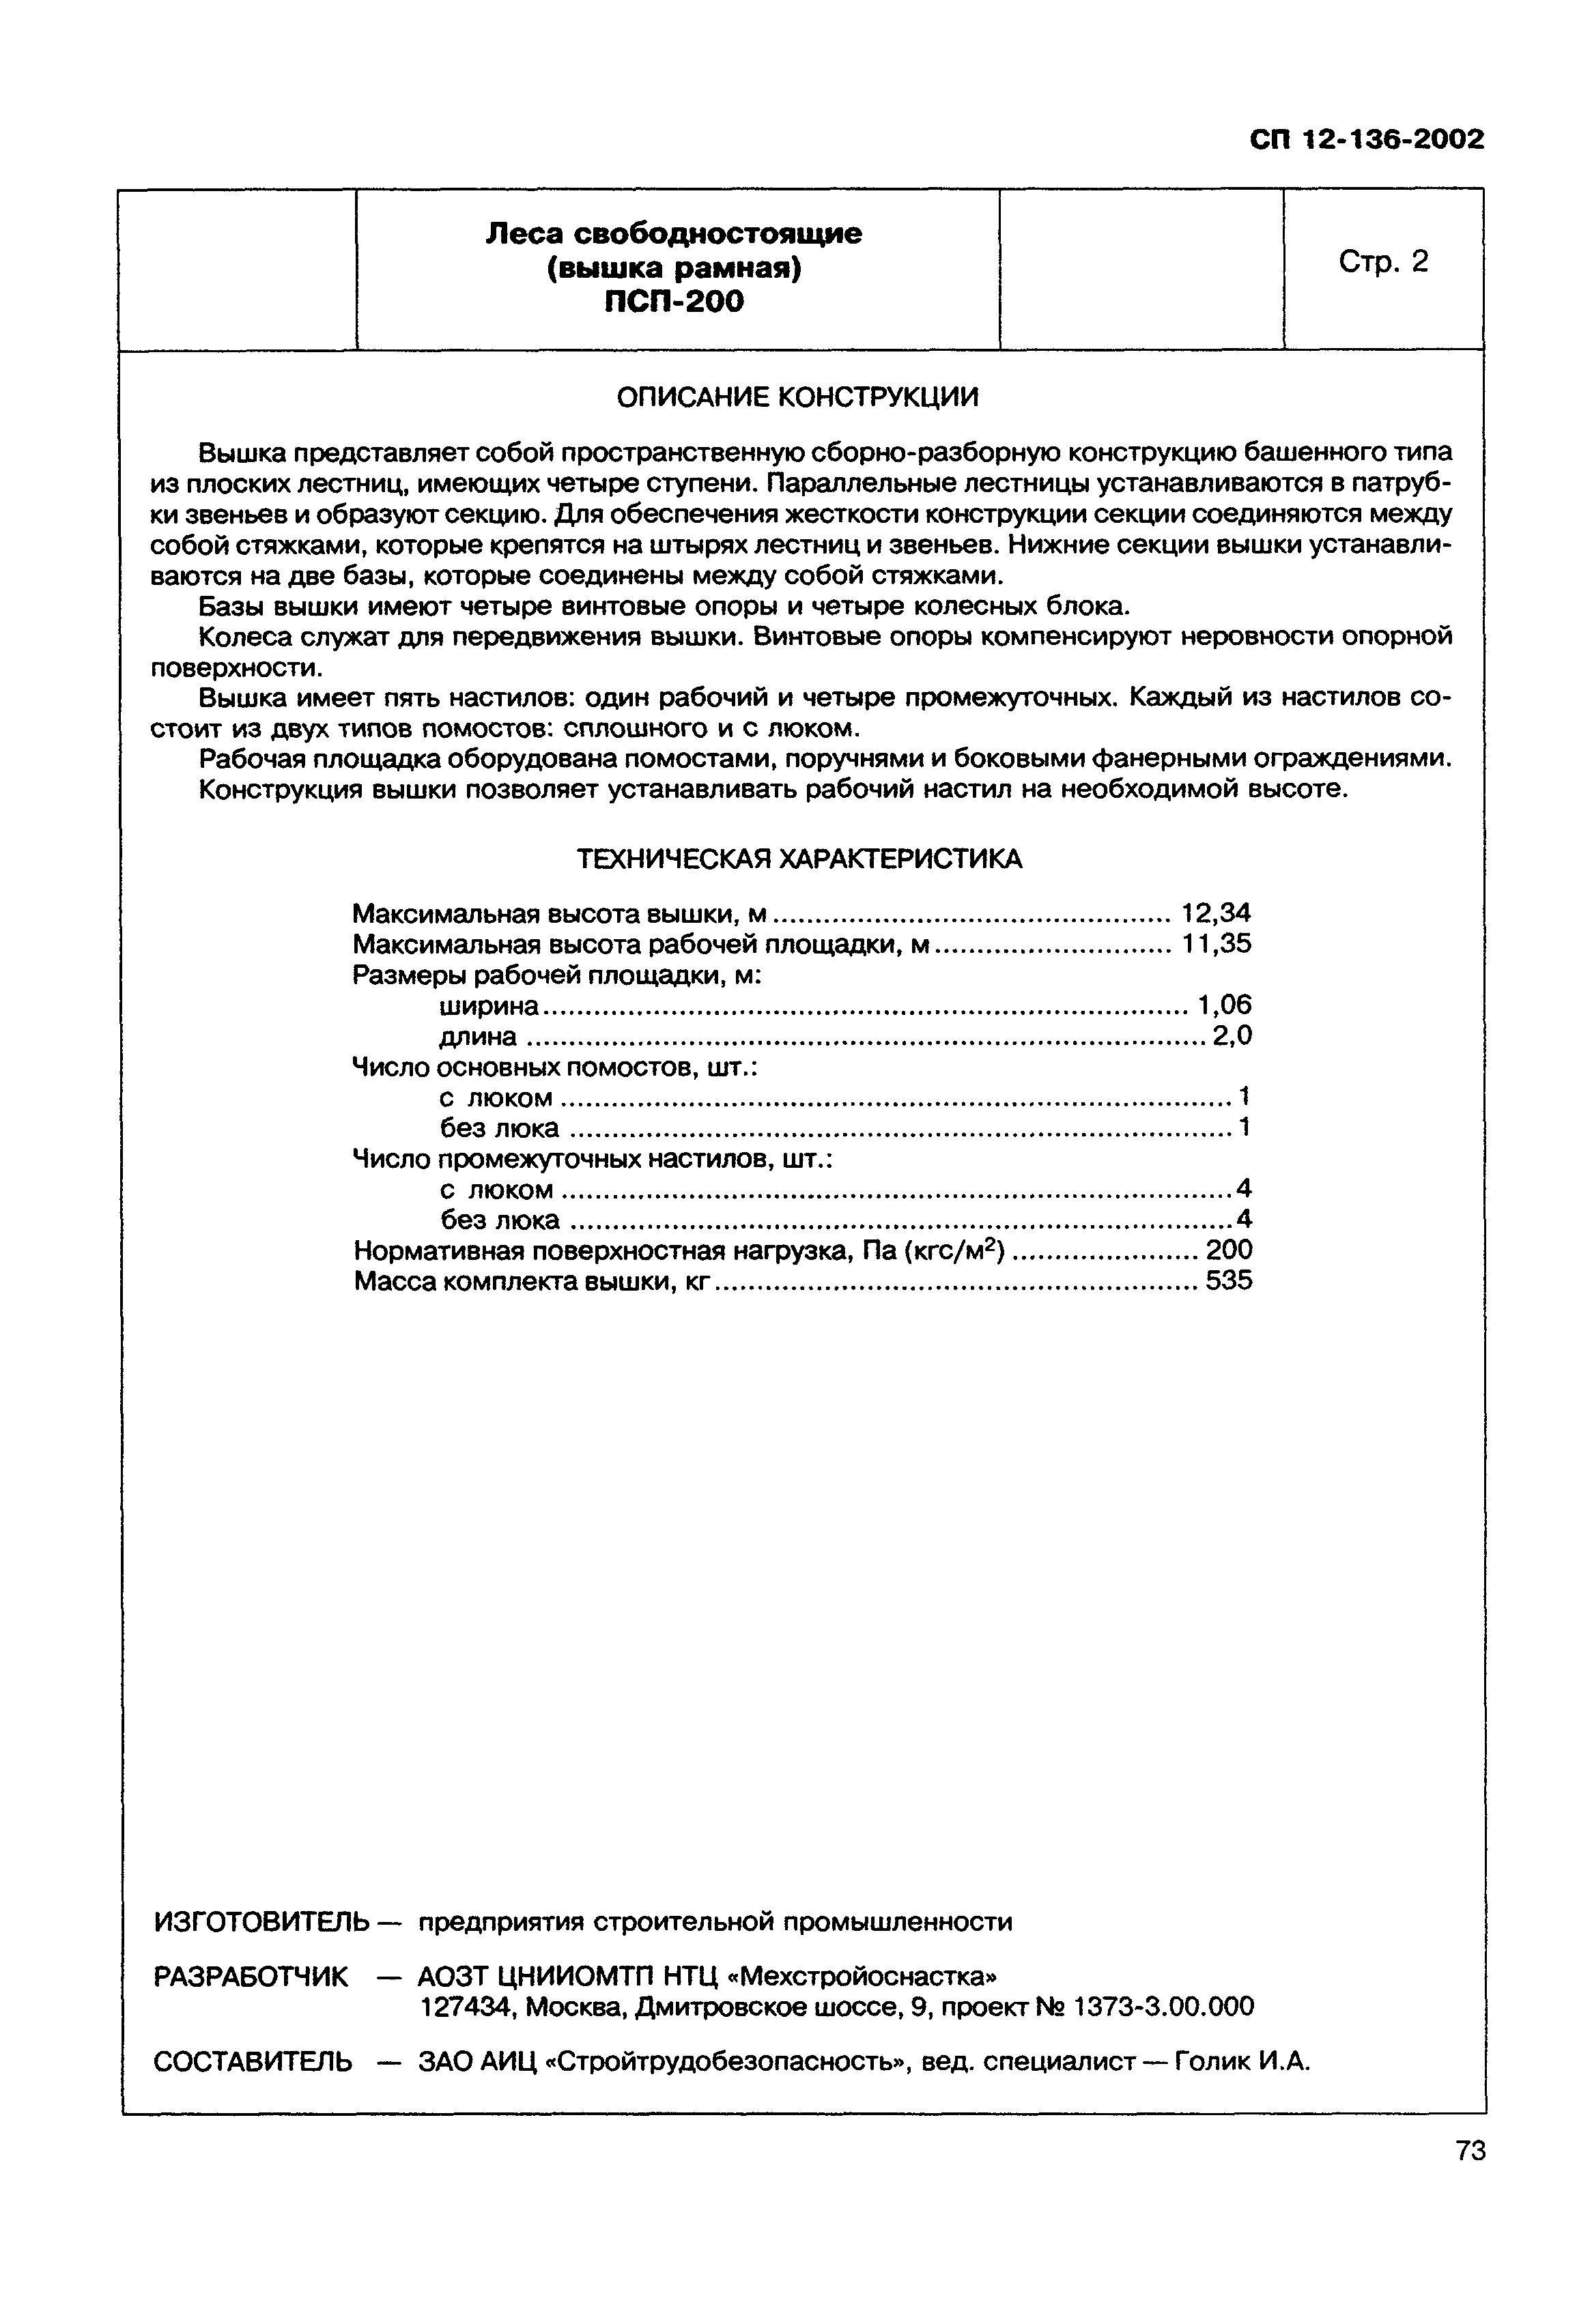 Справочное пособие к СП 12-136-2002